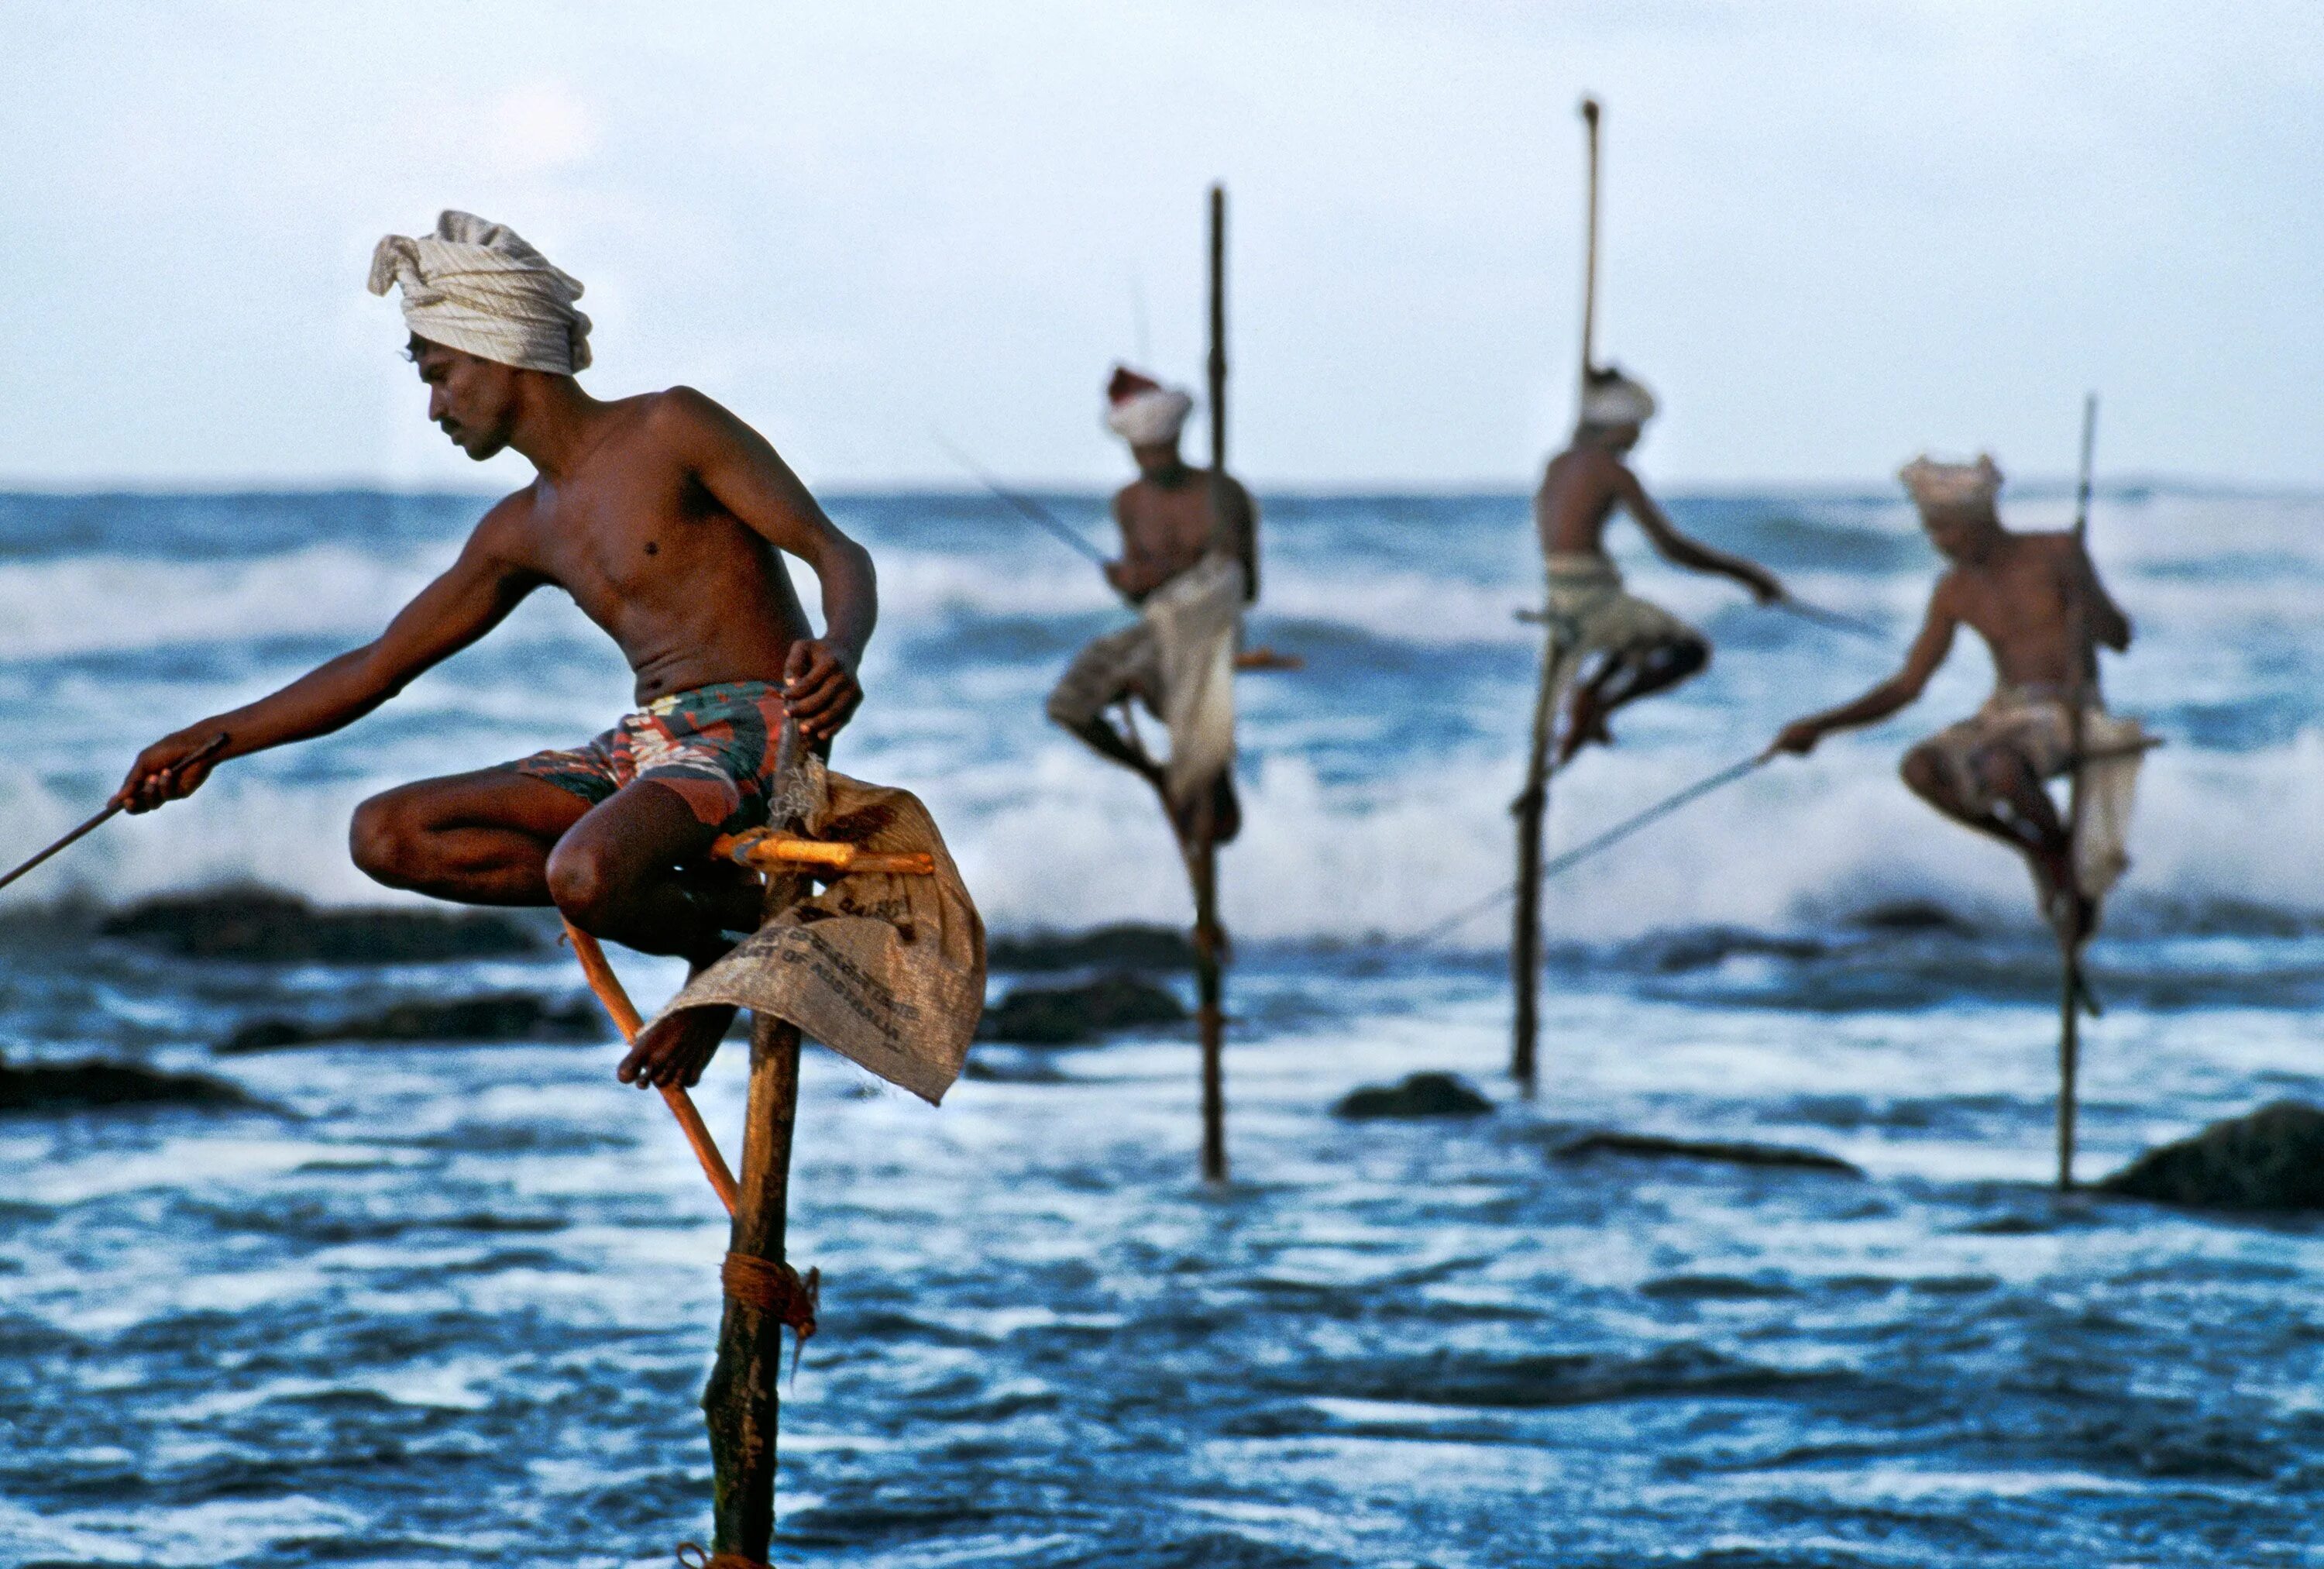 Рыба на шри ланке. Стив МАККАРРИ рыбаки. Стив Маккари Шри Ланки. Рыбаки на Шри Ланке на шестах. Велигама Шри Ланка рыбаки.